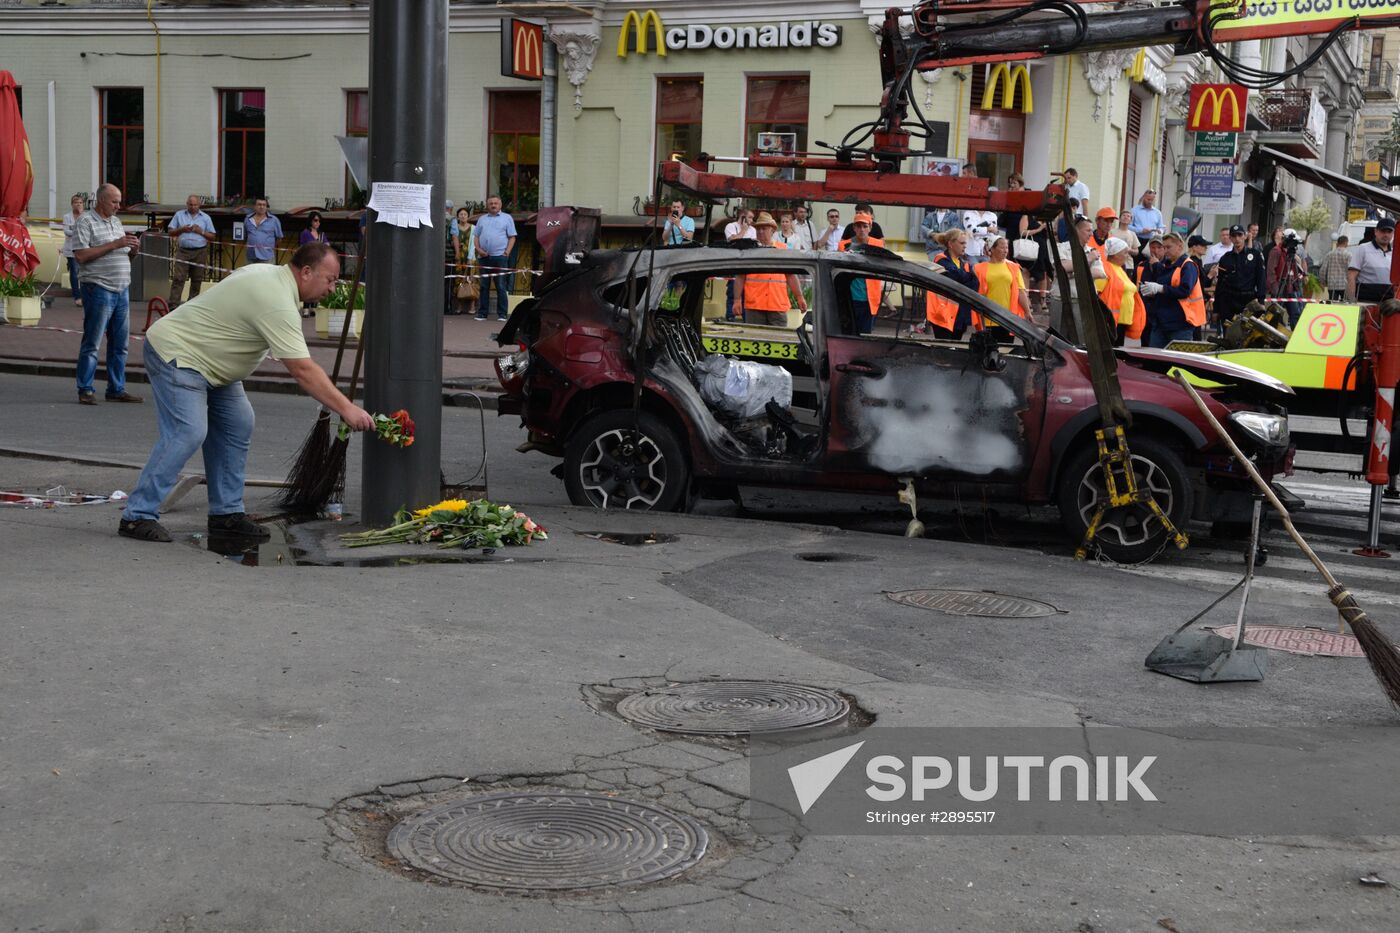 Journalist Pavel Sheremet killed in car explosion in Kiev